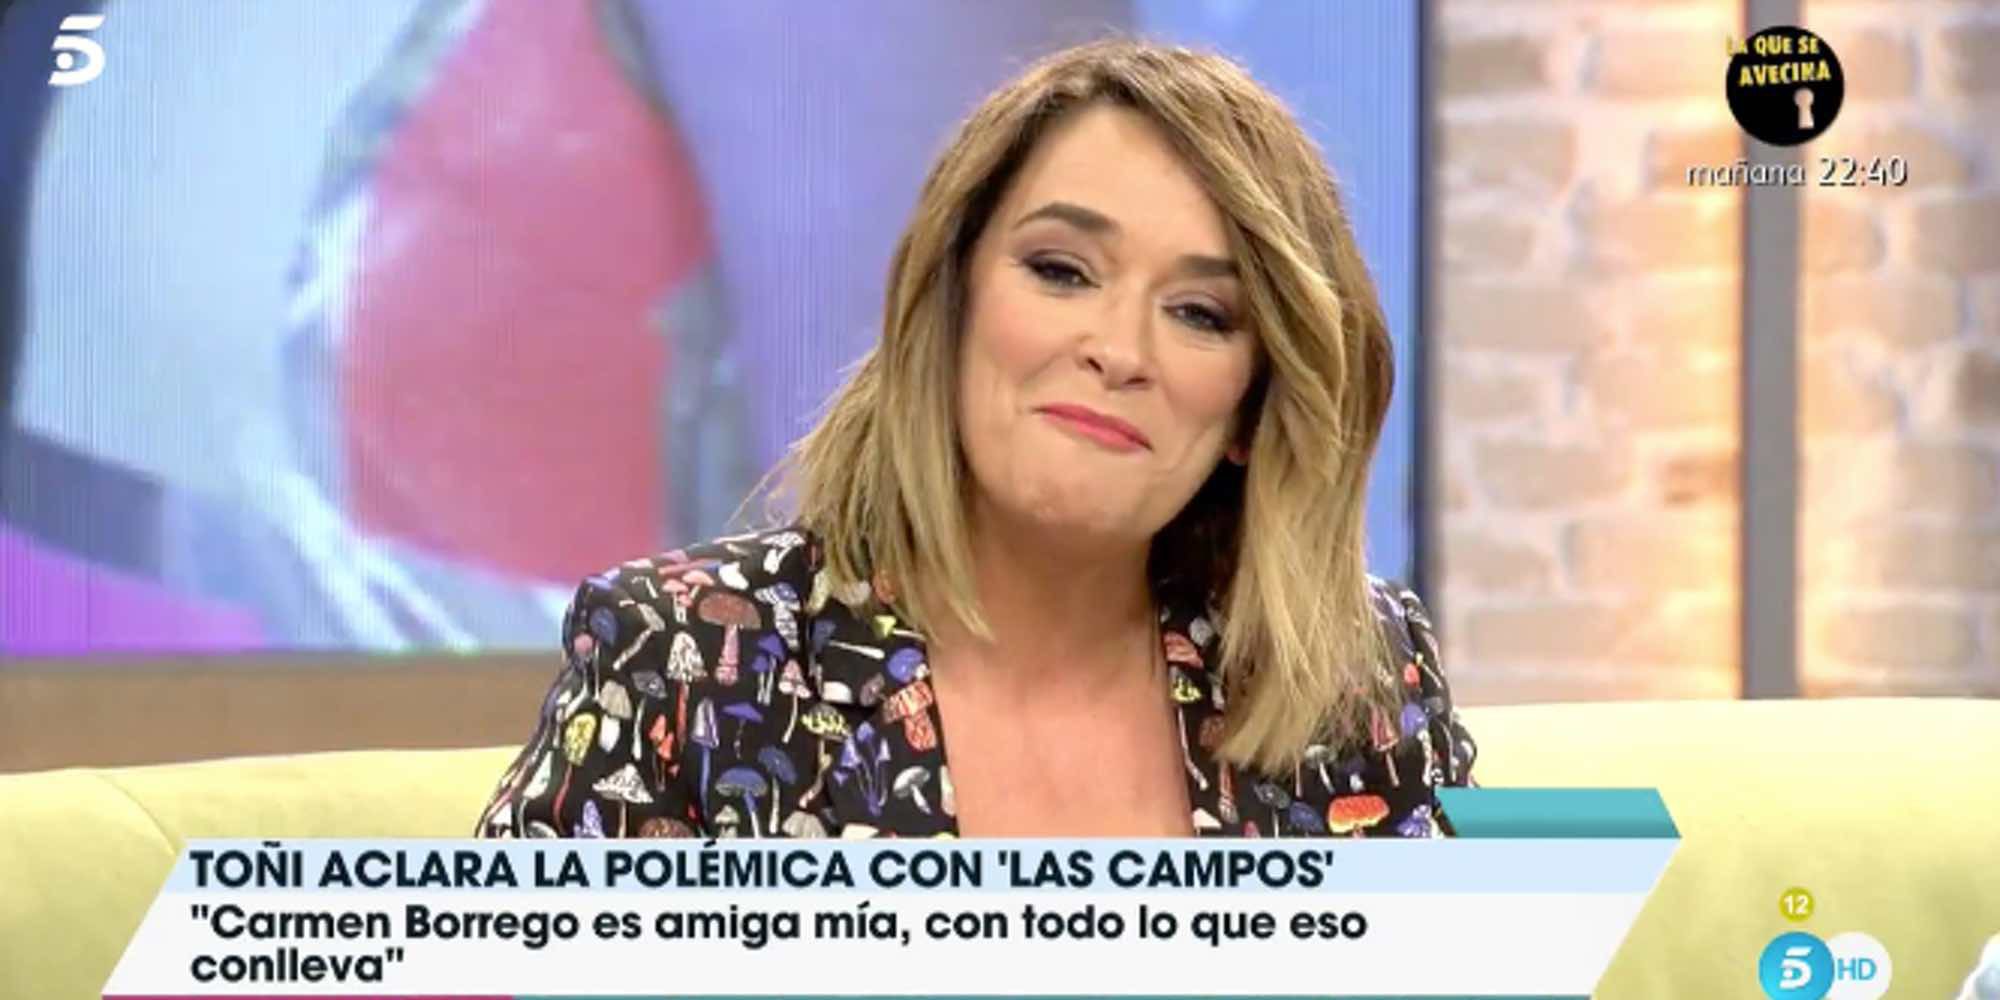 Toñi Moreno aclara su comentario de Carmen Borrego: "La quiero pero cuando eres amiga de alguien, hay roces"